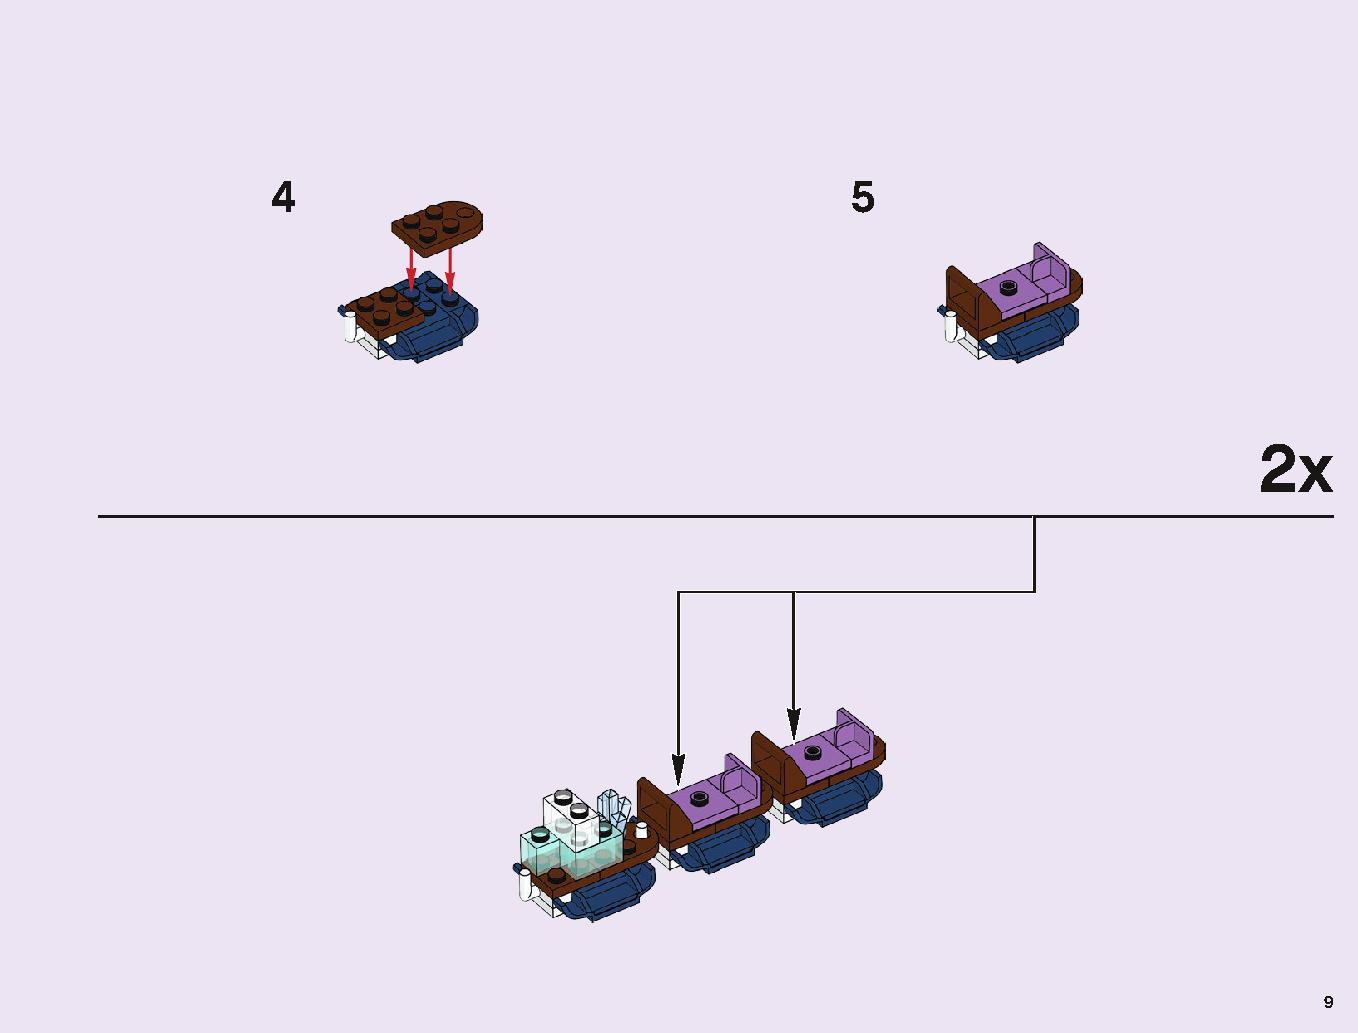 アナと雪の女王 “アイスキャッスル・ファンタジー” 43172 レゴの商品情報 レゴの説明書・組立方法 9 page